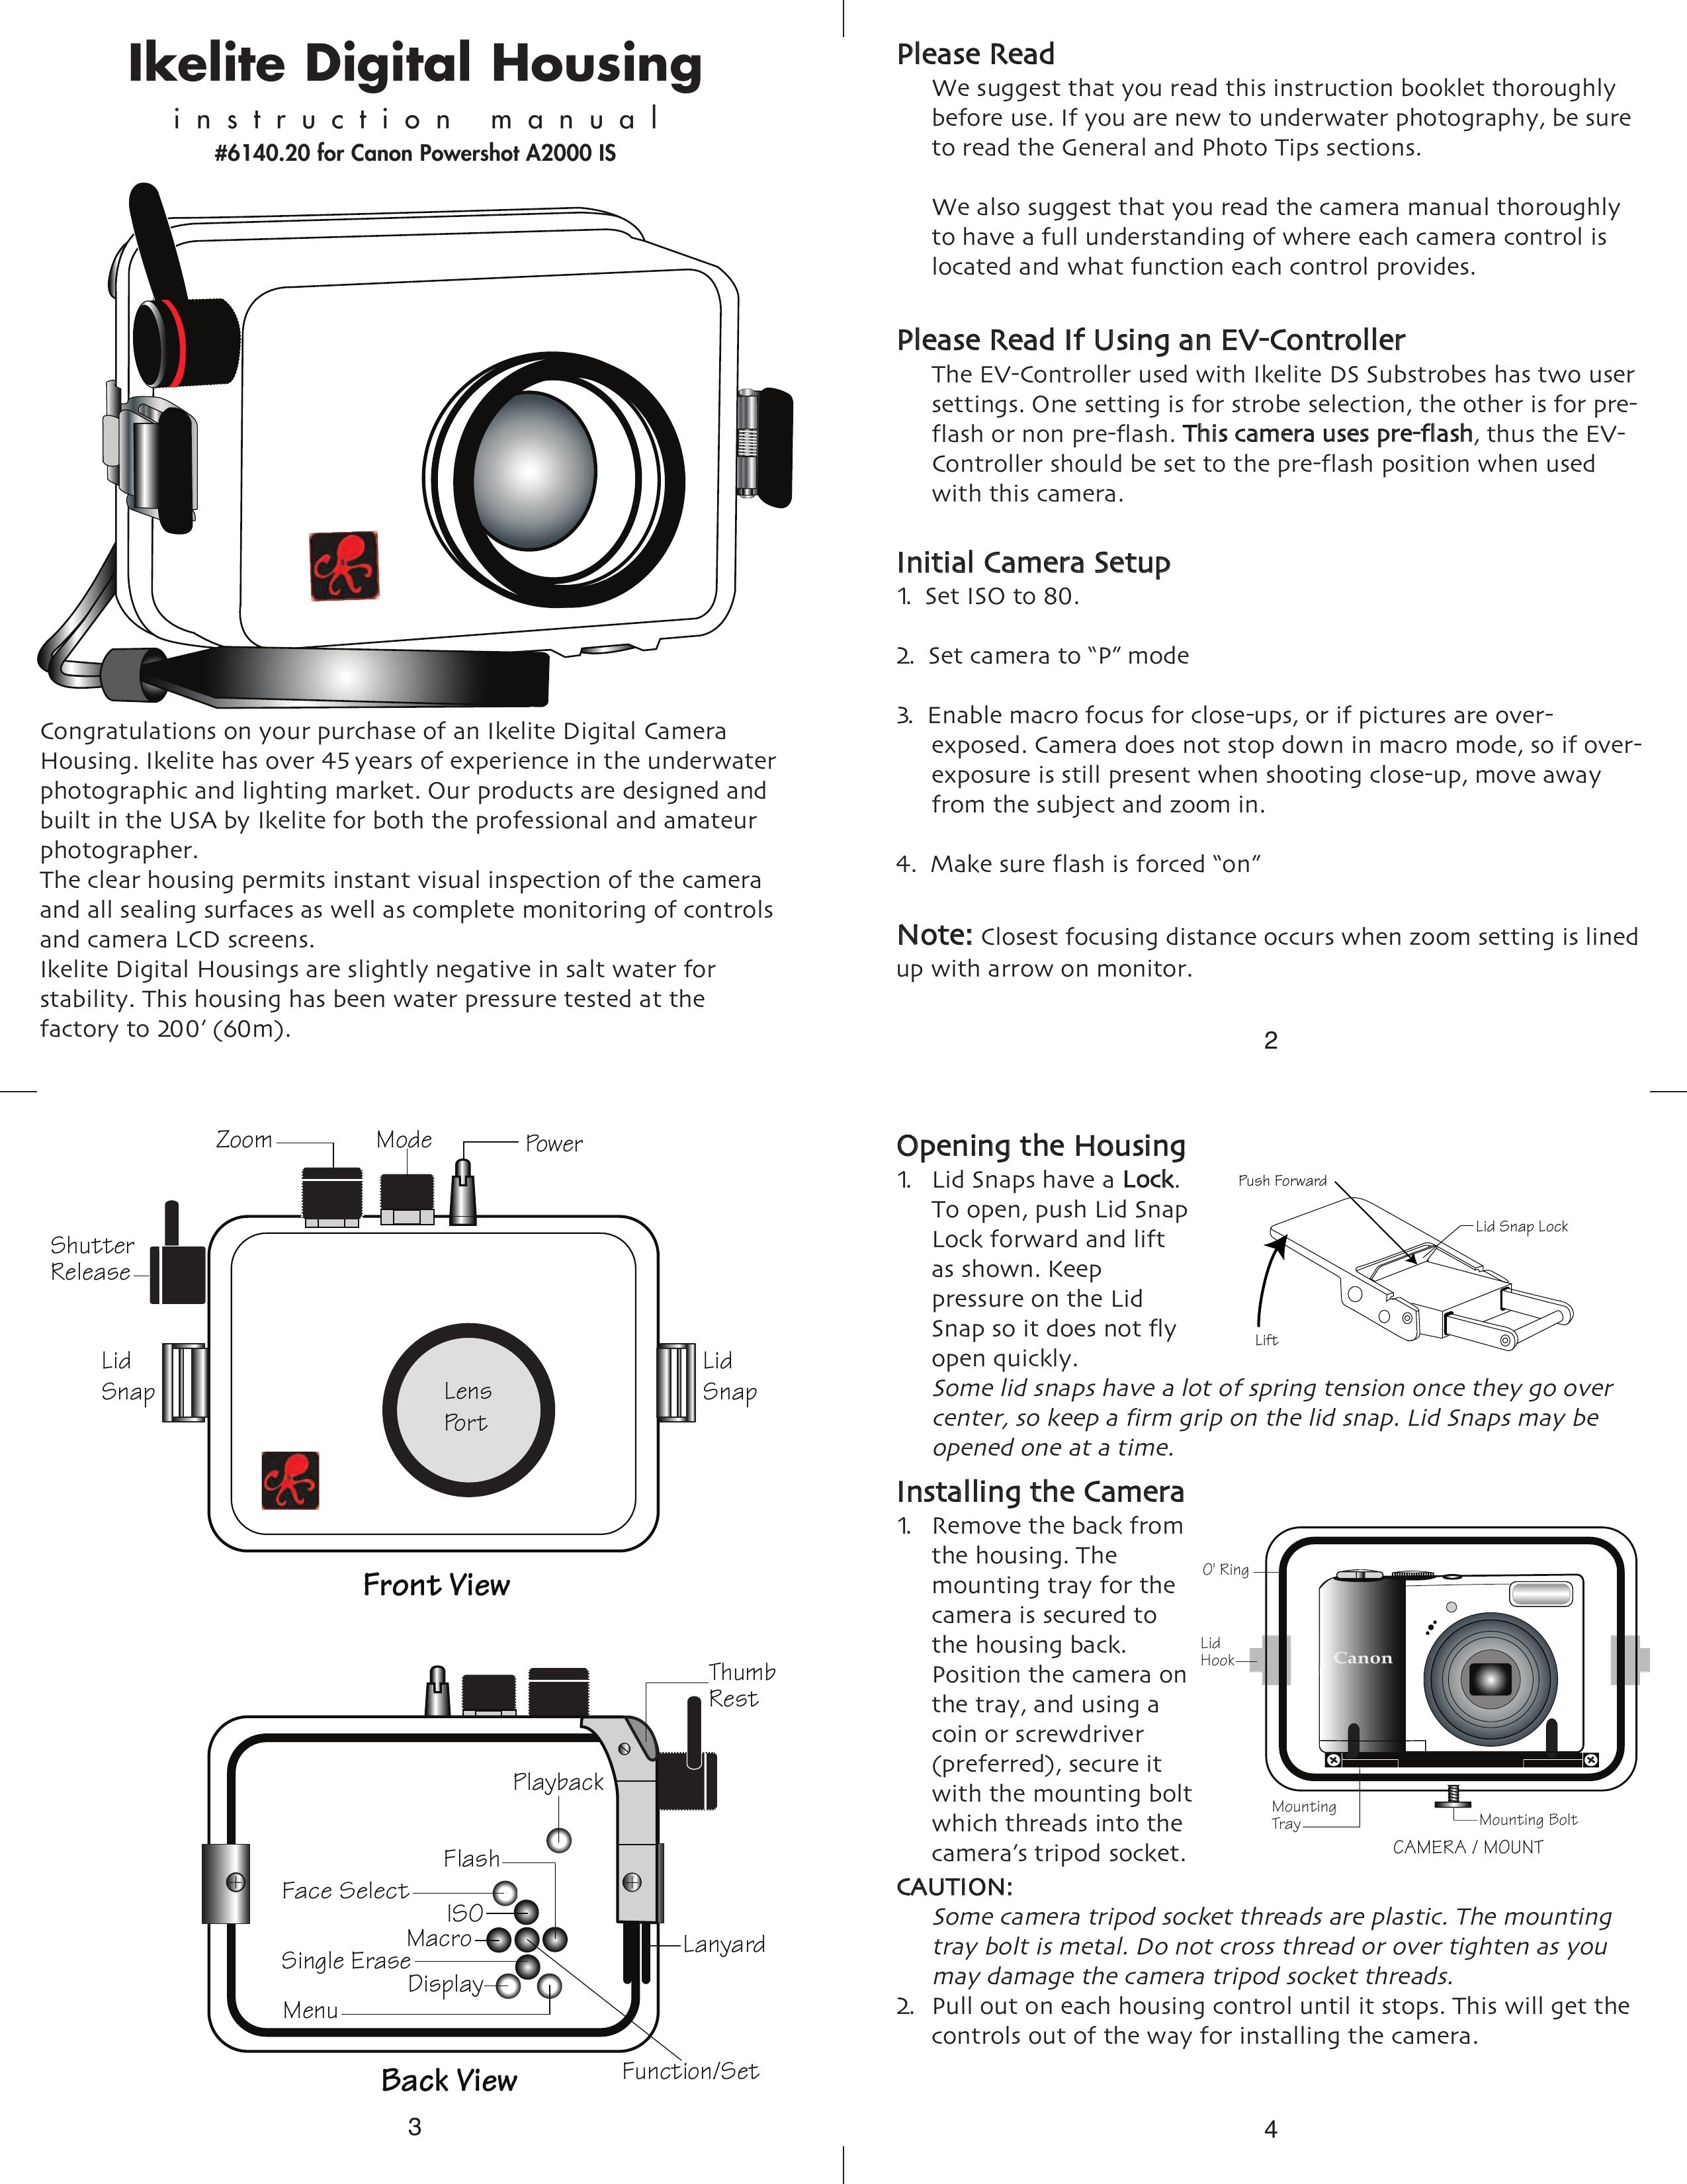 Ikelite DS160 Digital Camera User Manual